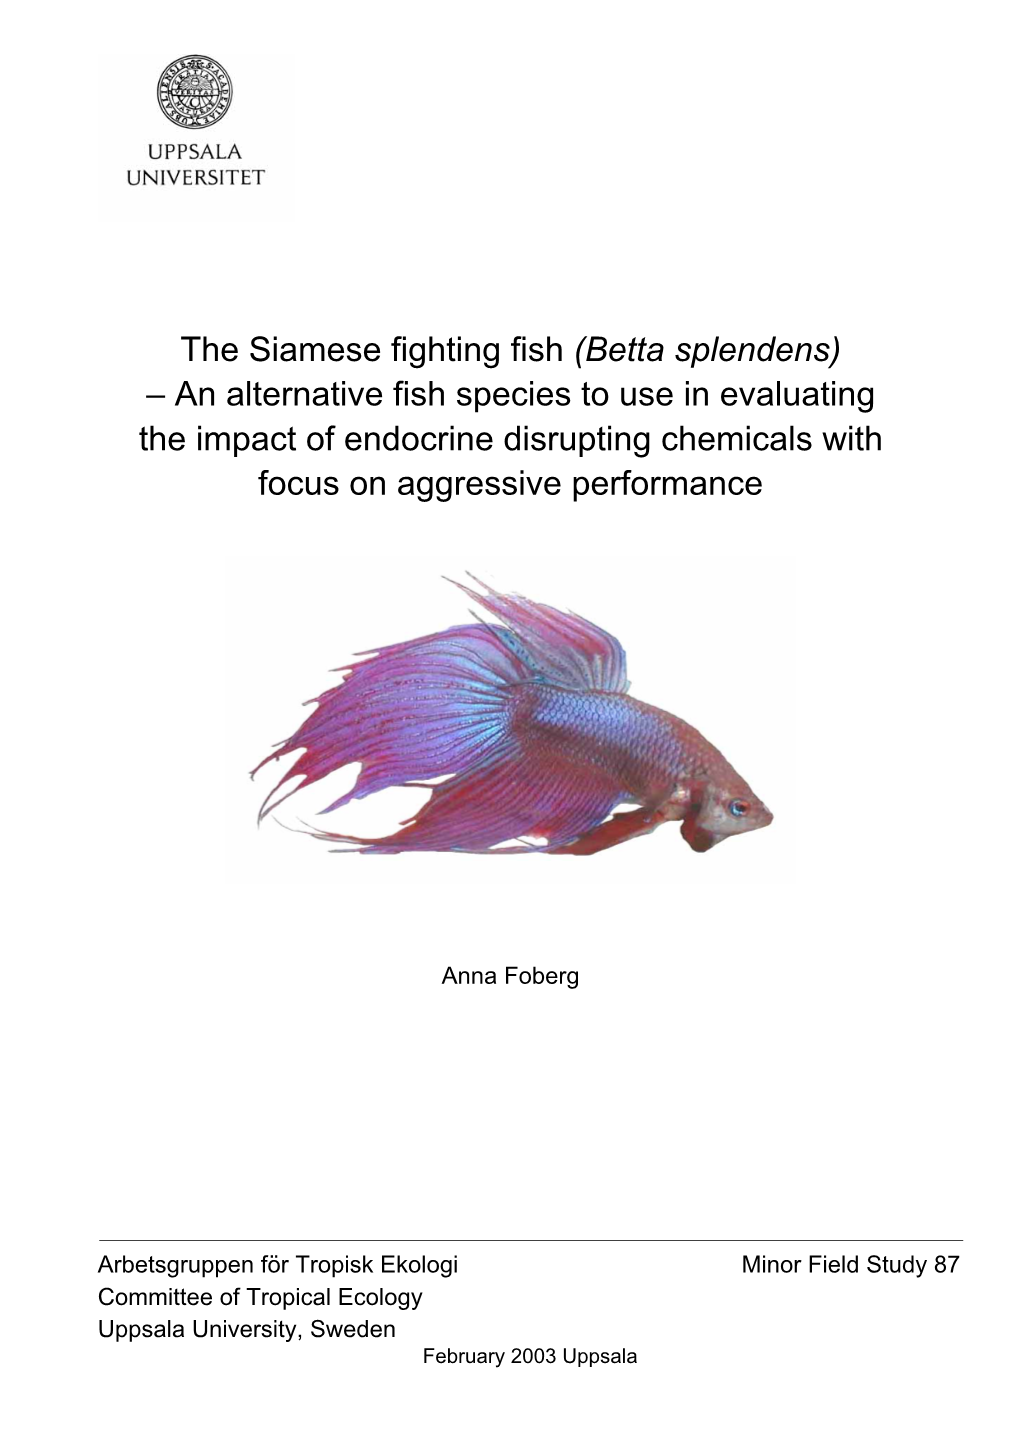 The Siamese Fighting Fish (Betta Splendens)